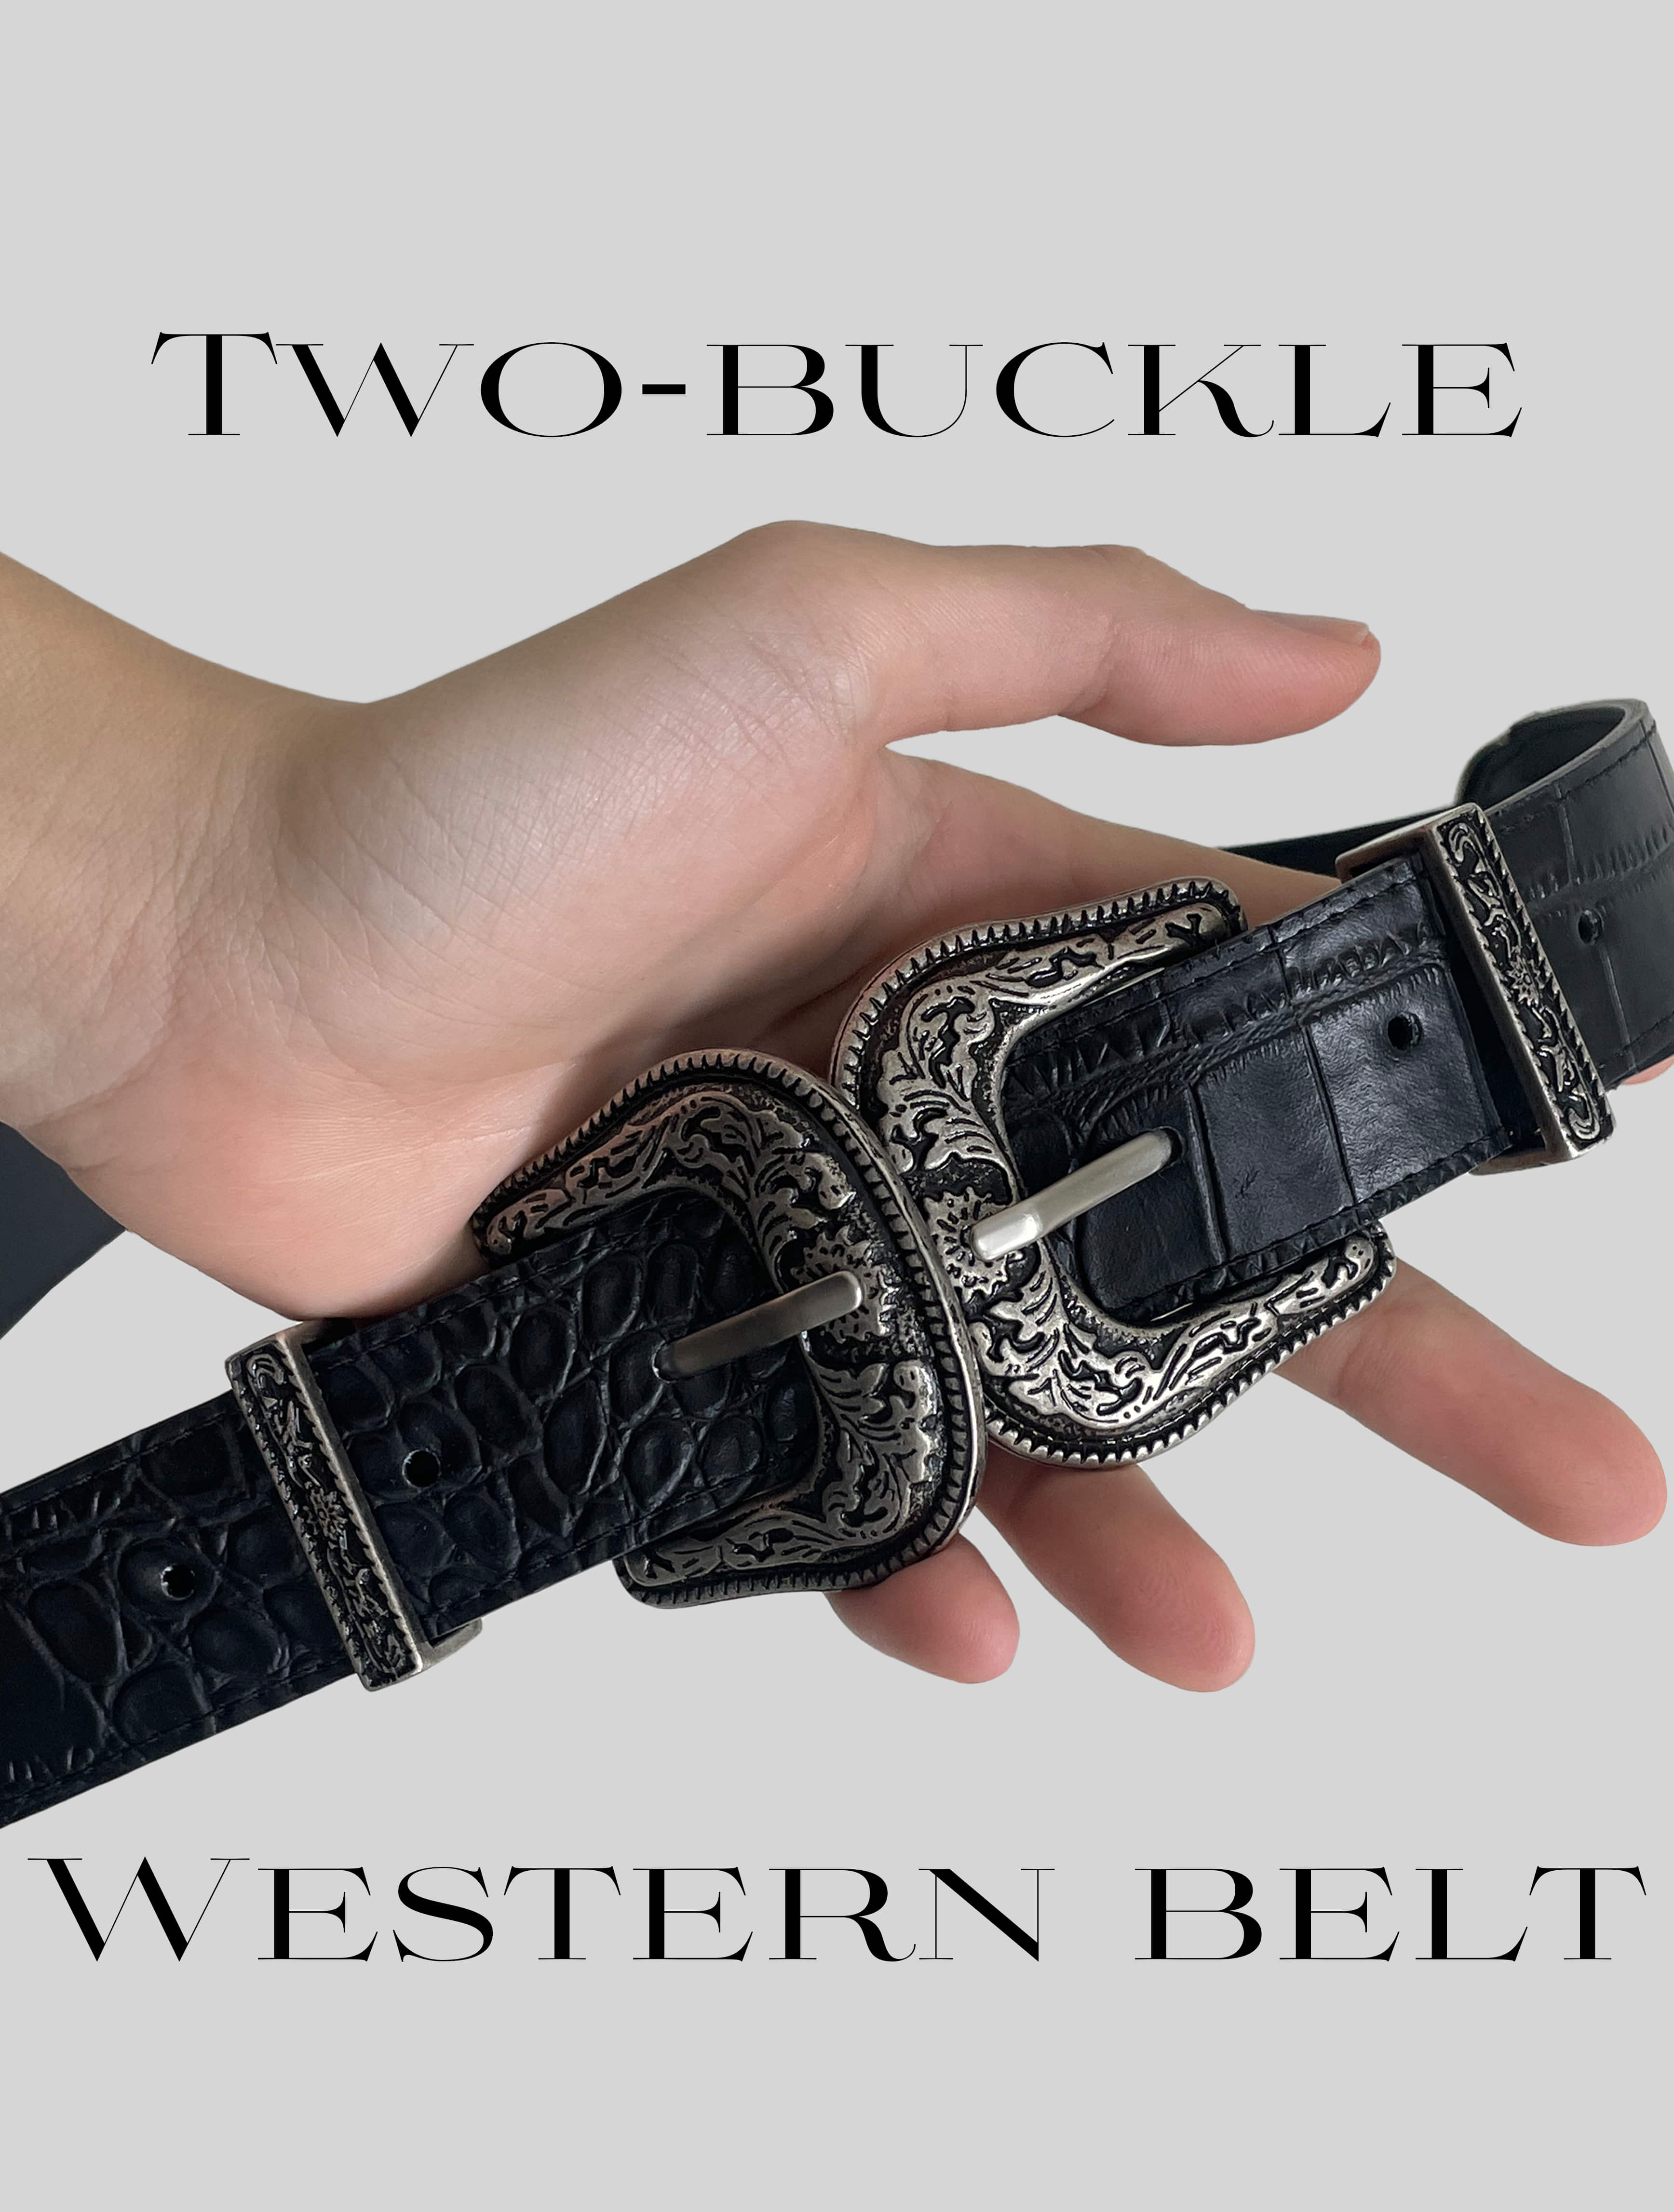 Two-buckle Western belt